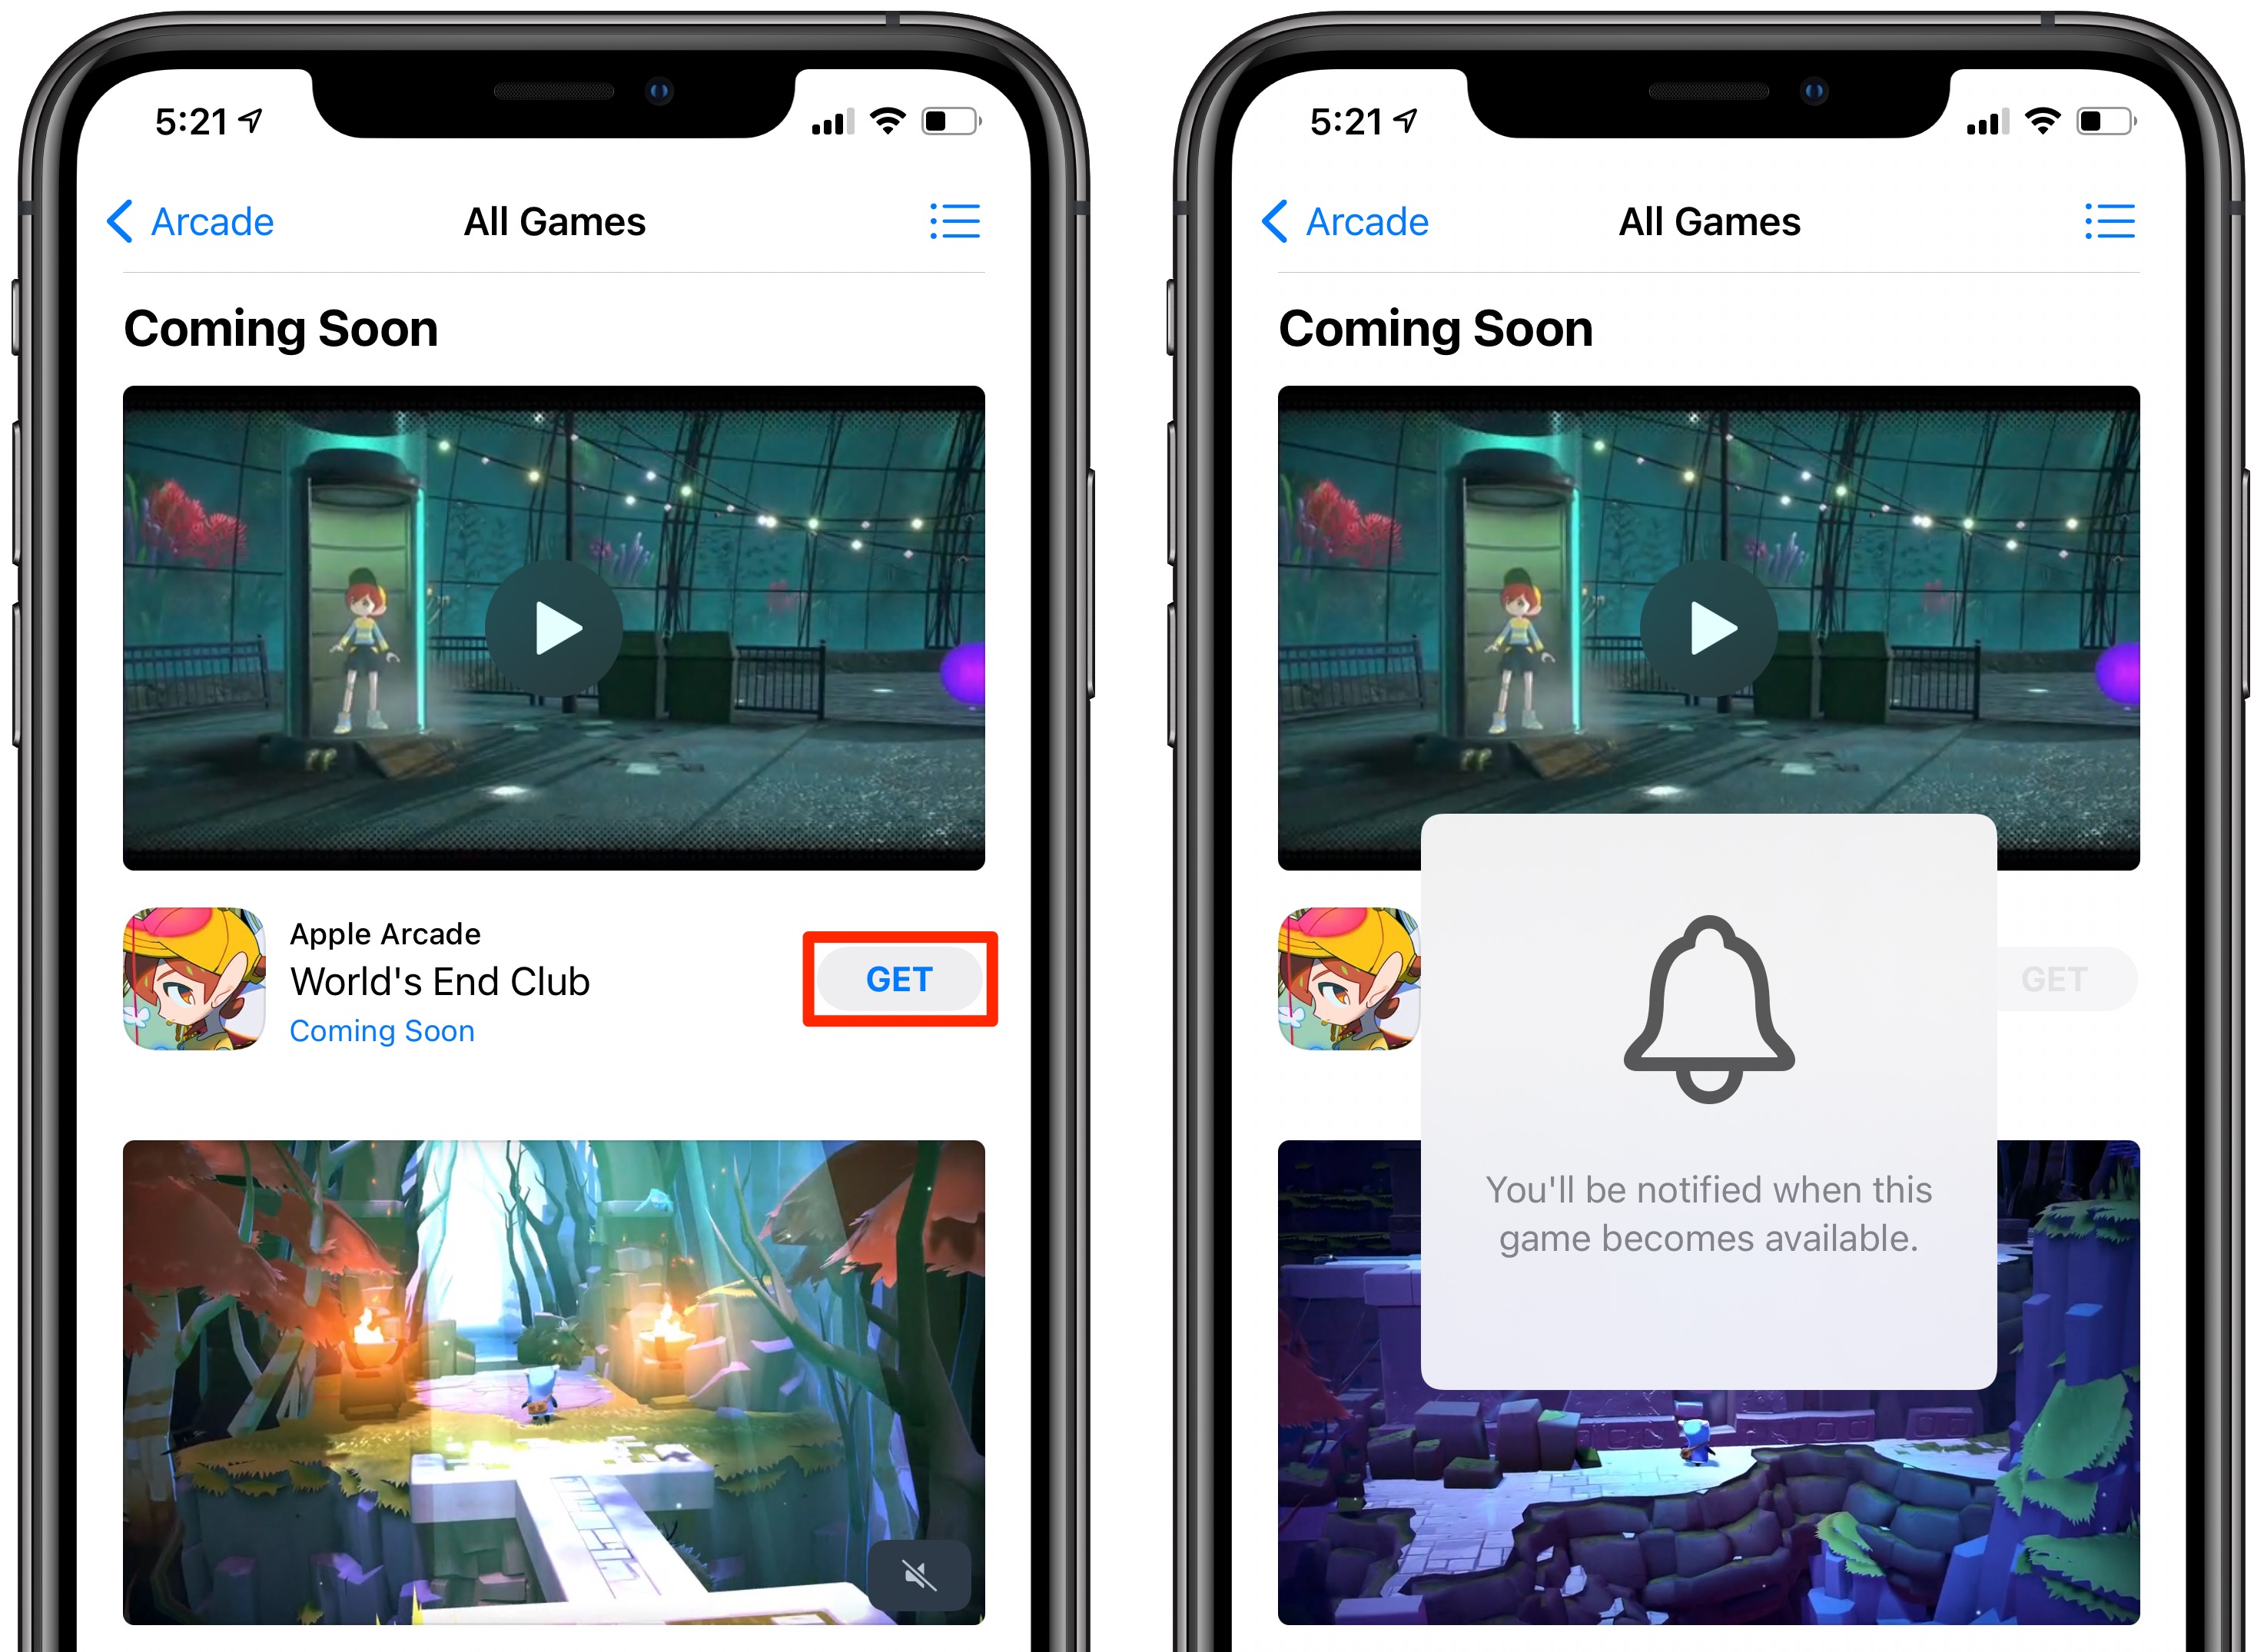 Prossimi giochi Apple Arcade: un messaggio dice che l'utente riceverà una notifica quando il gioco sarà disponibile